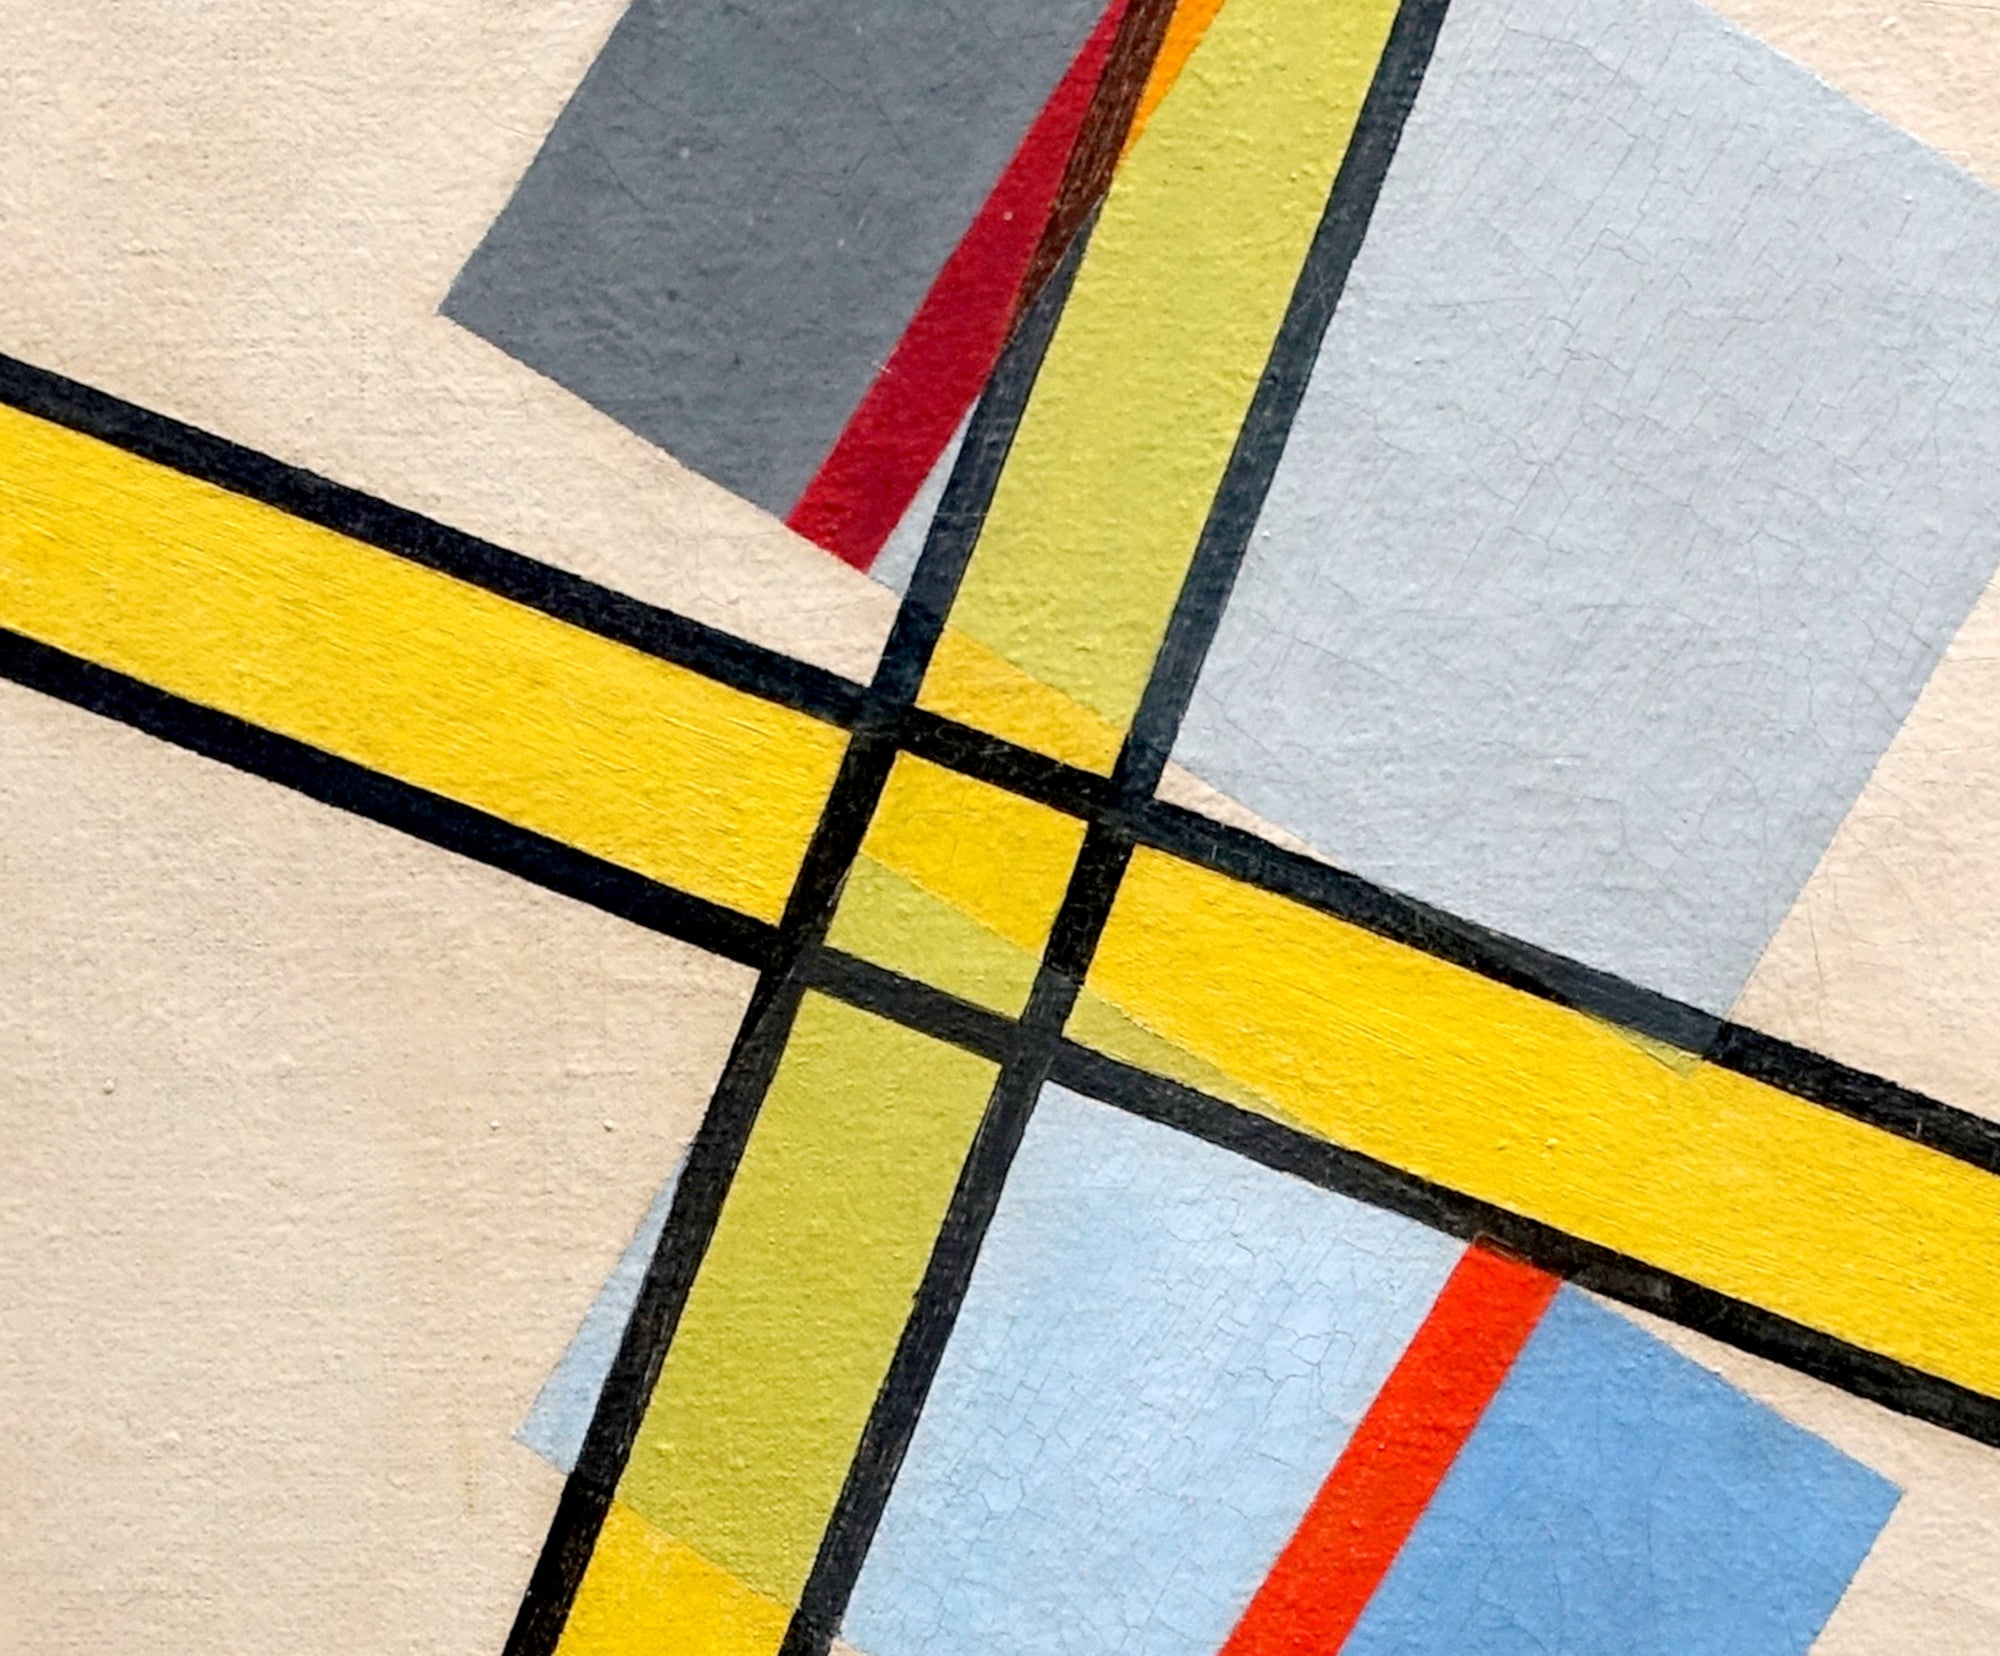 László Moholy-Nagy Abstract Fine Art Print, Yellow Cross